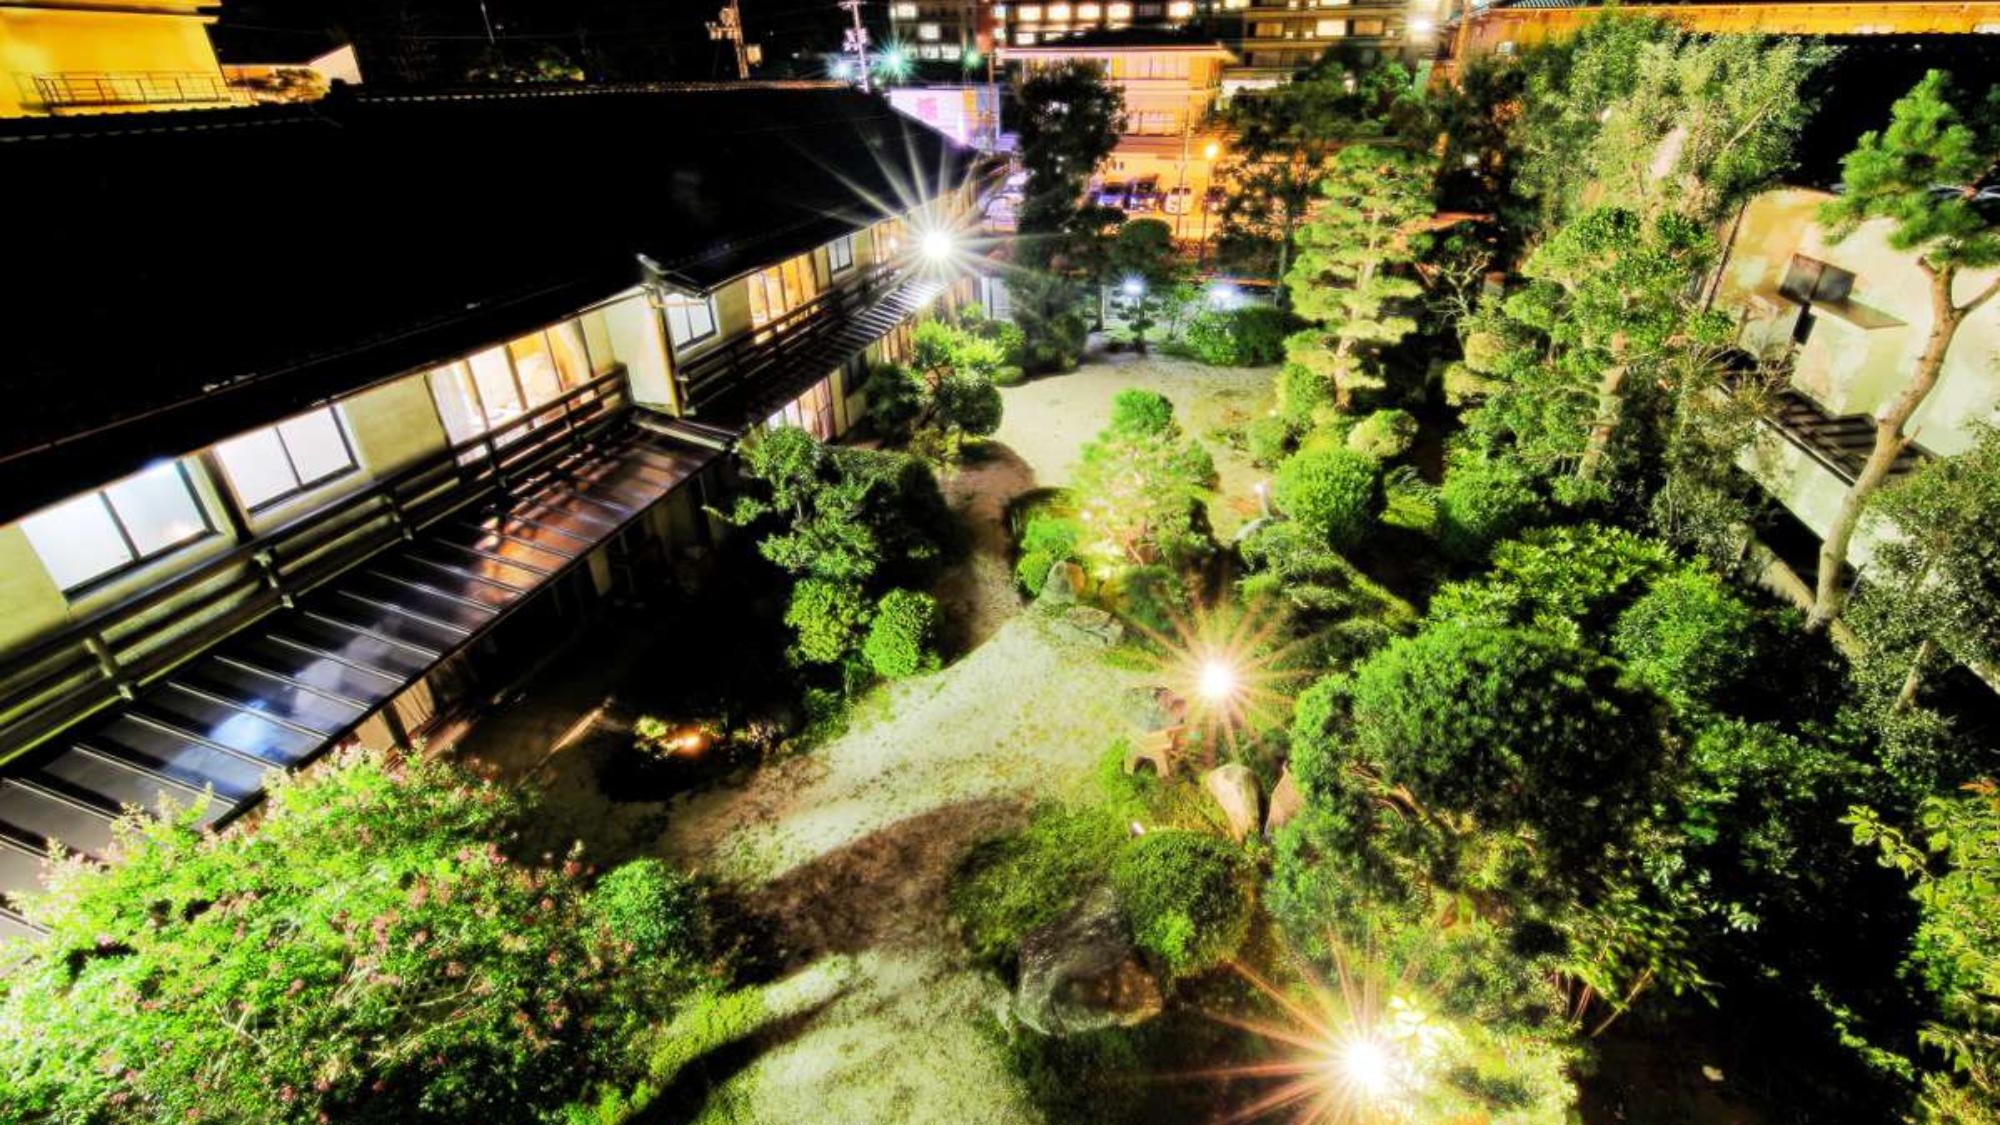 夜、ライトアップされた庭は幻想的な美しさ。季節がめぐるたびに表情を変える、当館自慢の日本庭園